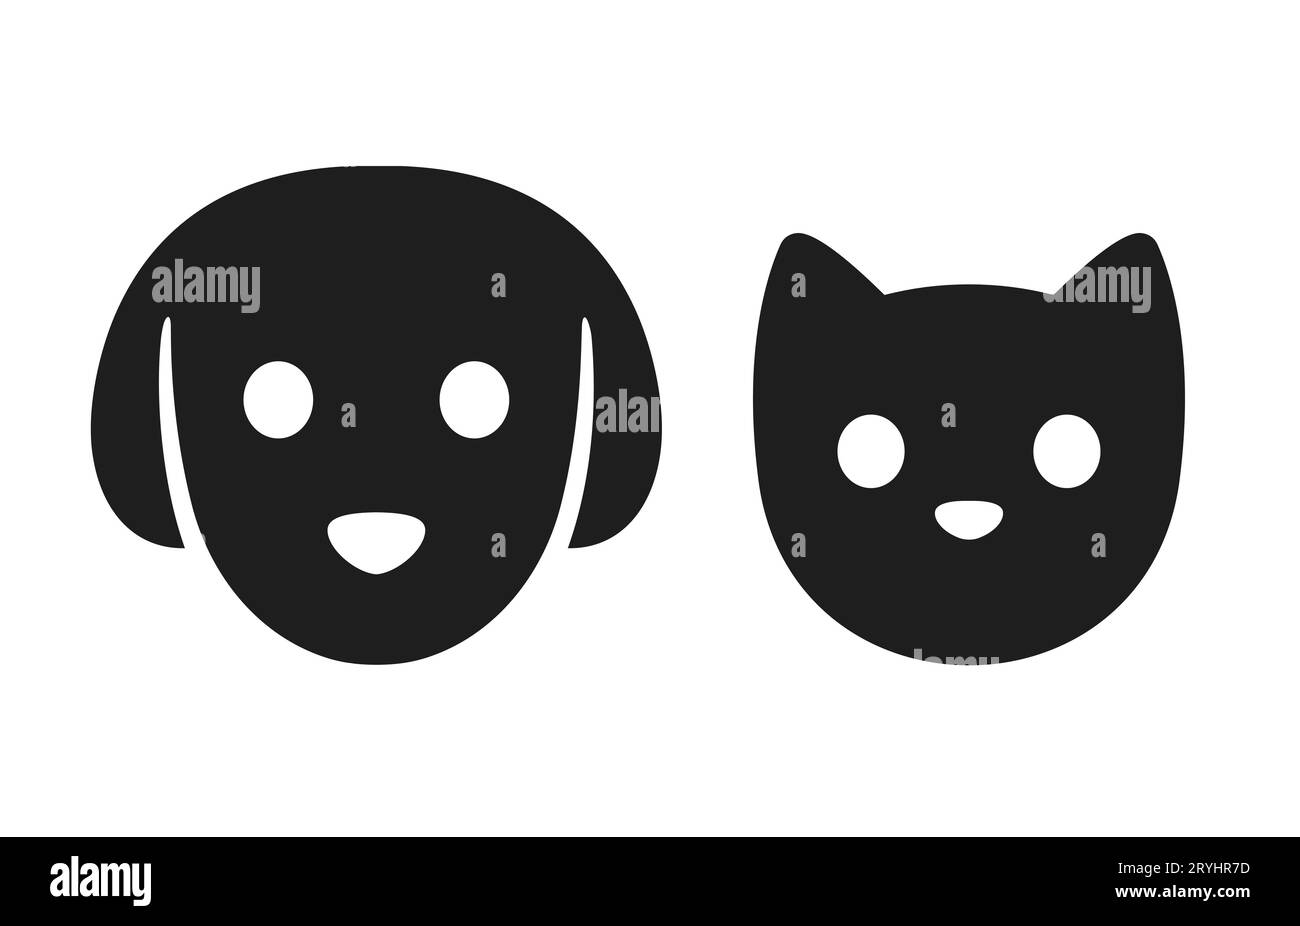 Icône de tête de chat et de chien. Pictogramme simple stylisé de visage d'animal de compagnie, silhouette noire avec les yeux et le nez. Jeu d'illustrations vectorielles. Illustration de Vecteur